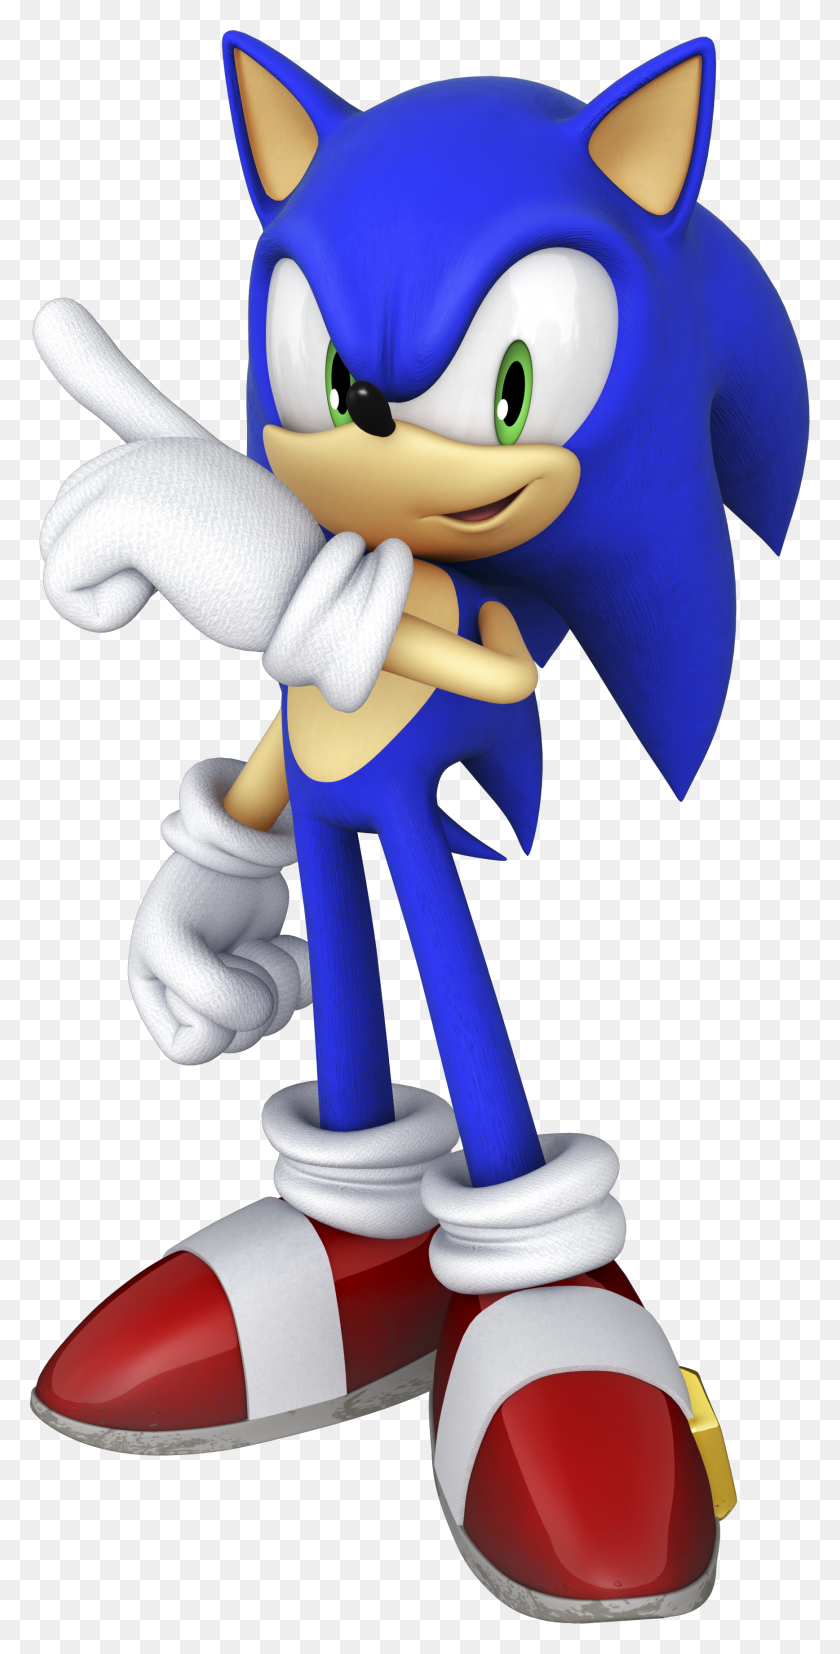 1736x3549 Imagen - Sonic The Hedgehog Png